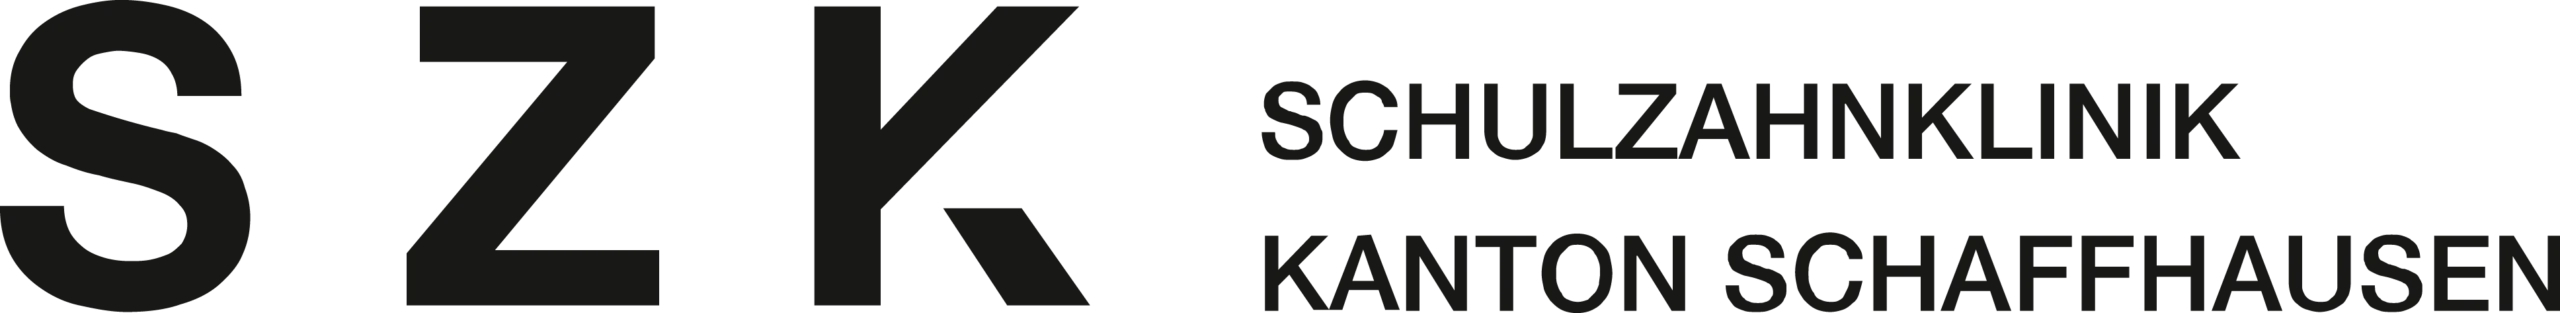 Schulzahnklinik Schaffhausen Logo Original